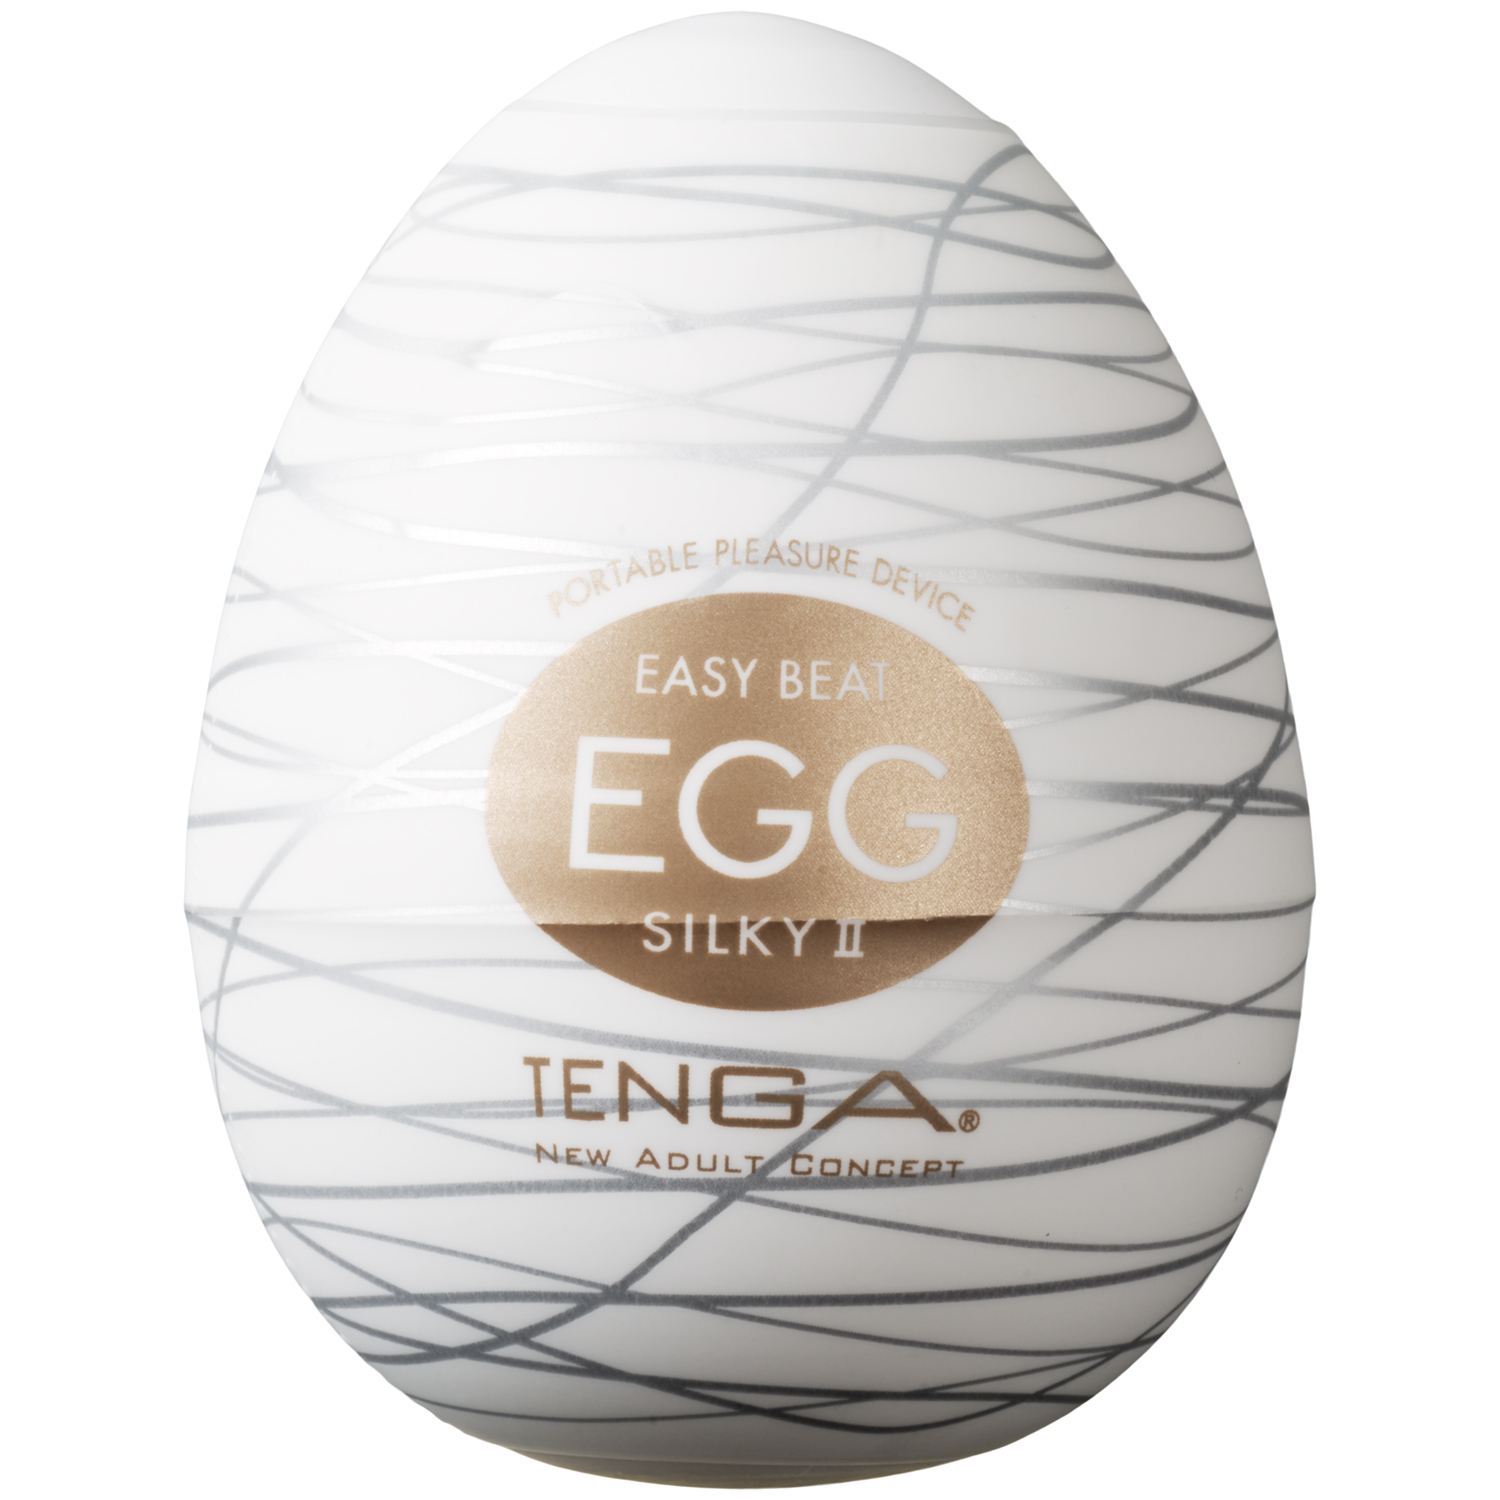 TENGA Egg Silky II Masturbator - White